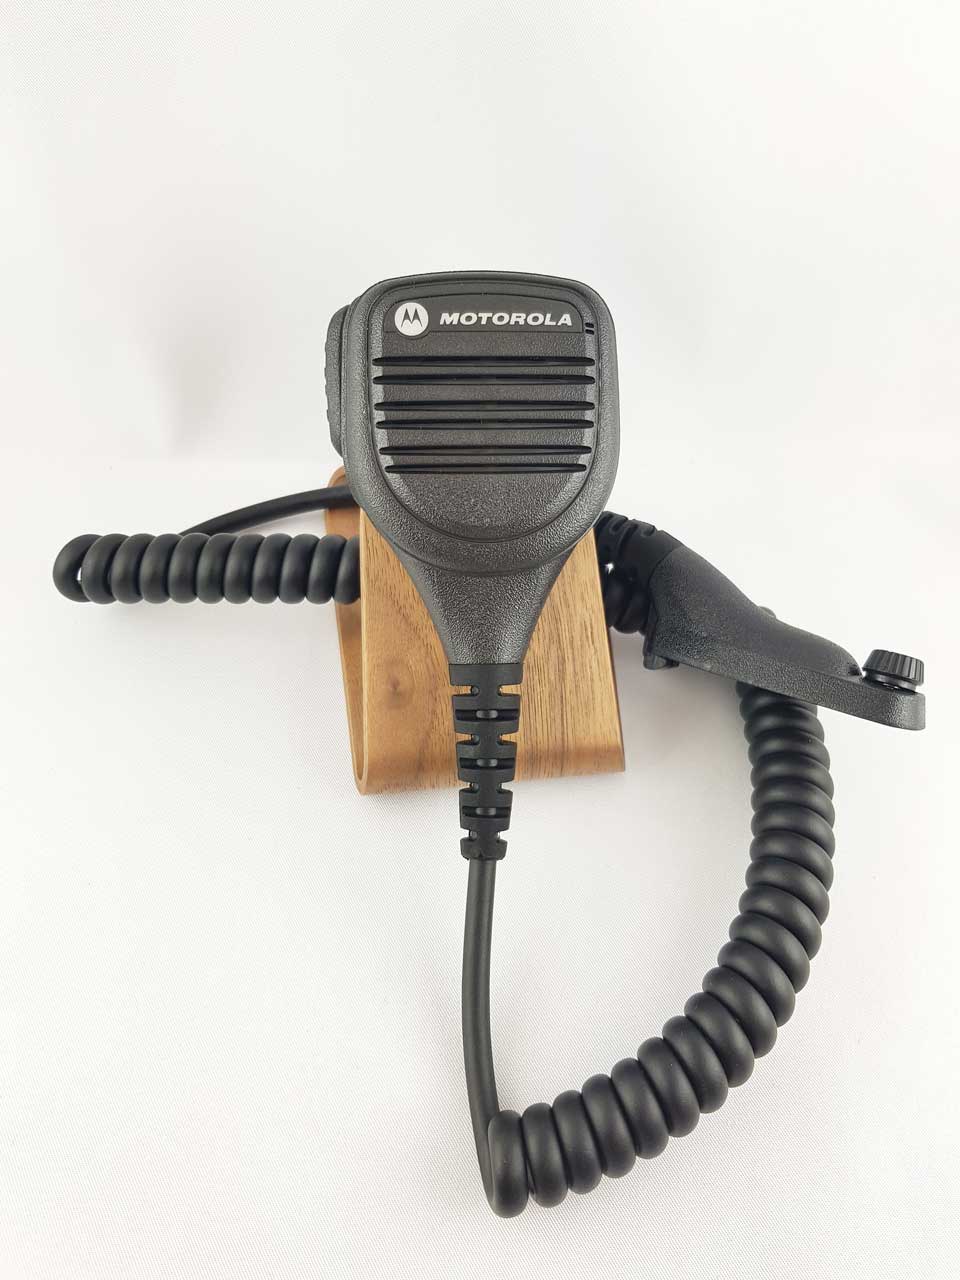 Motorola Wassergeschützes abgesetztes Lautsprecher Mikrofon IP57 PMMN4040A